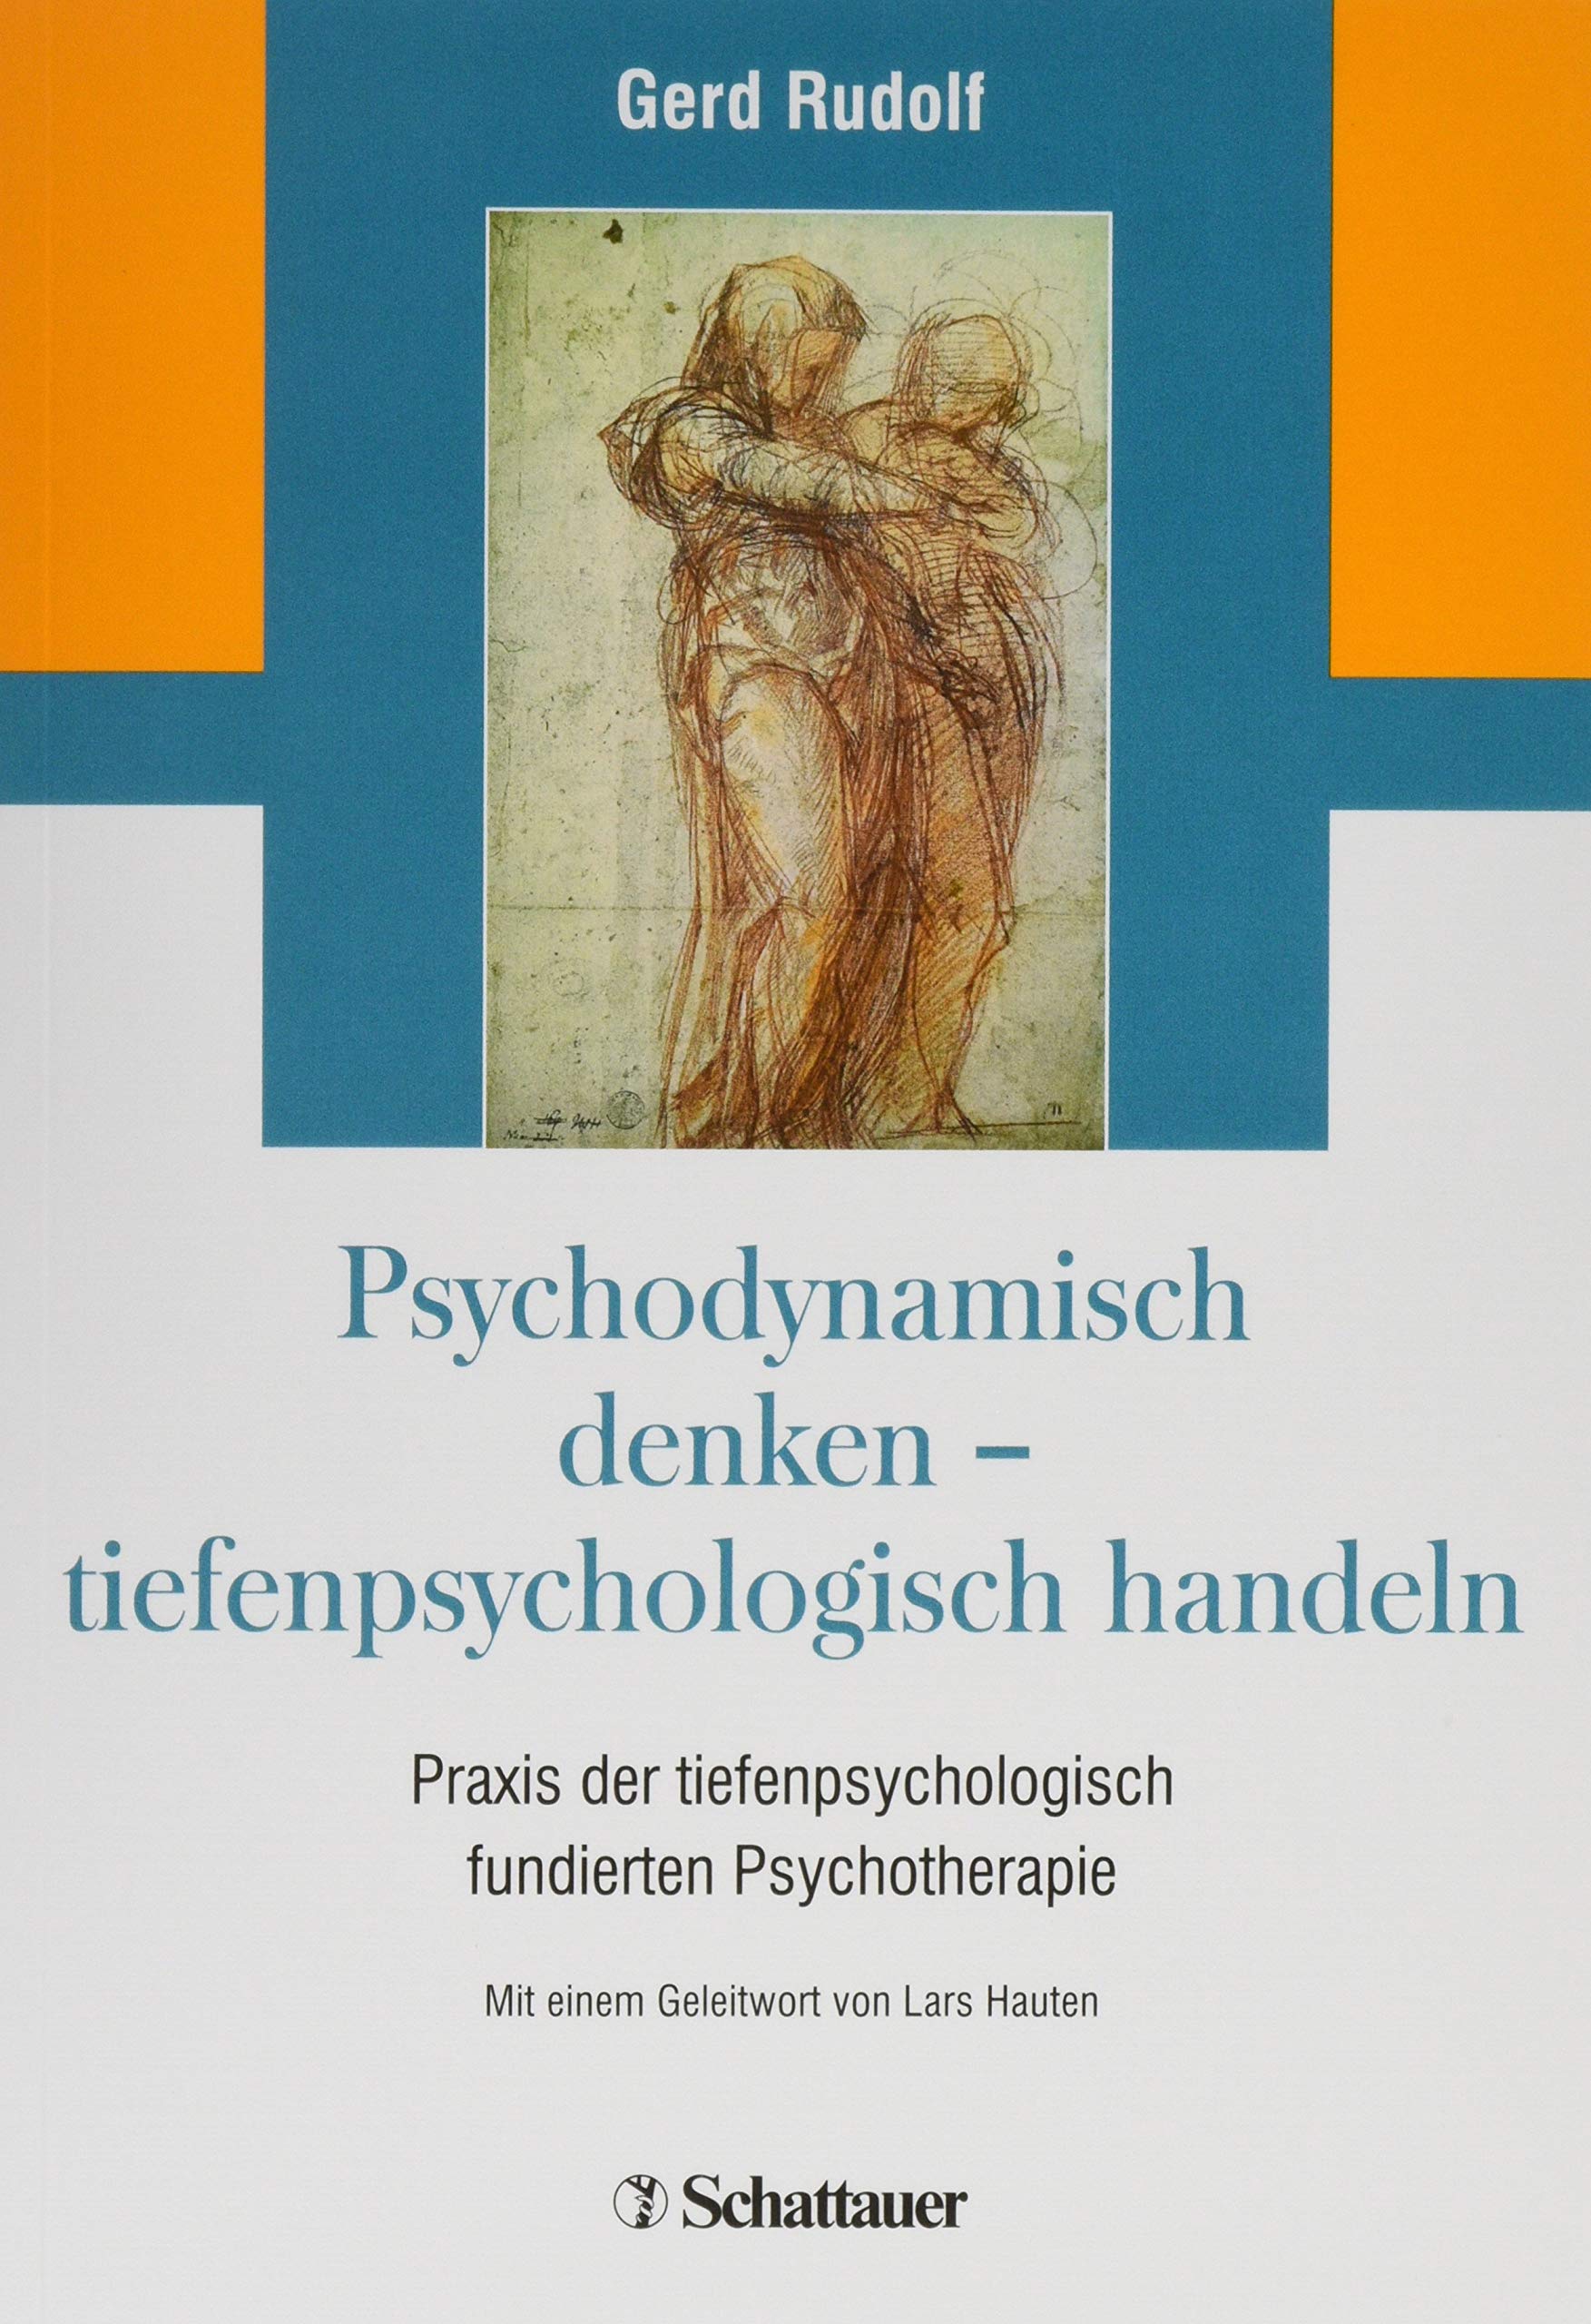 Buch: Psychodynamisch denken - tiefenpsychologisch handeln: Praxis der tiefenpsychologisch fundierten Psychotherapie (Amazon)